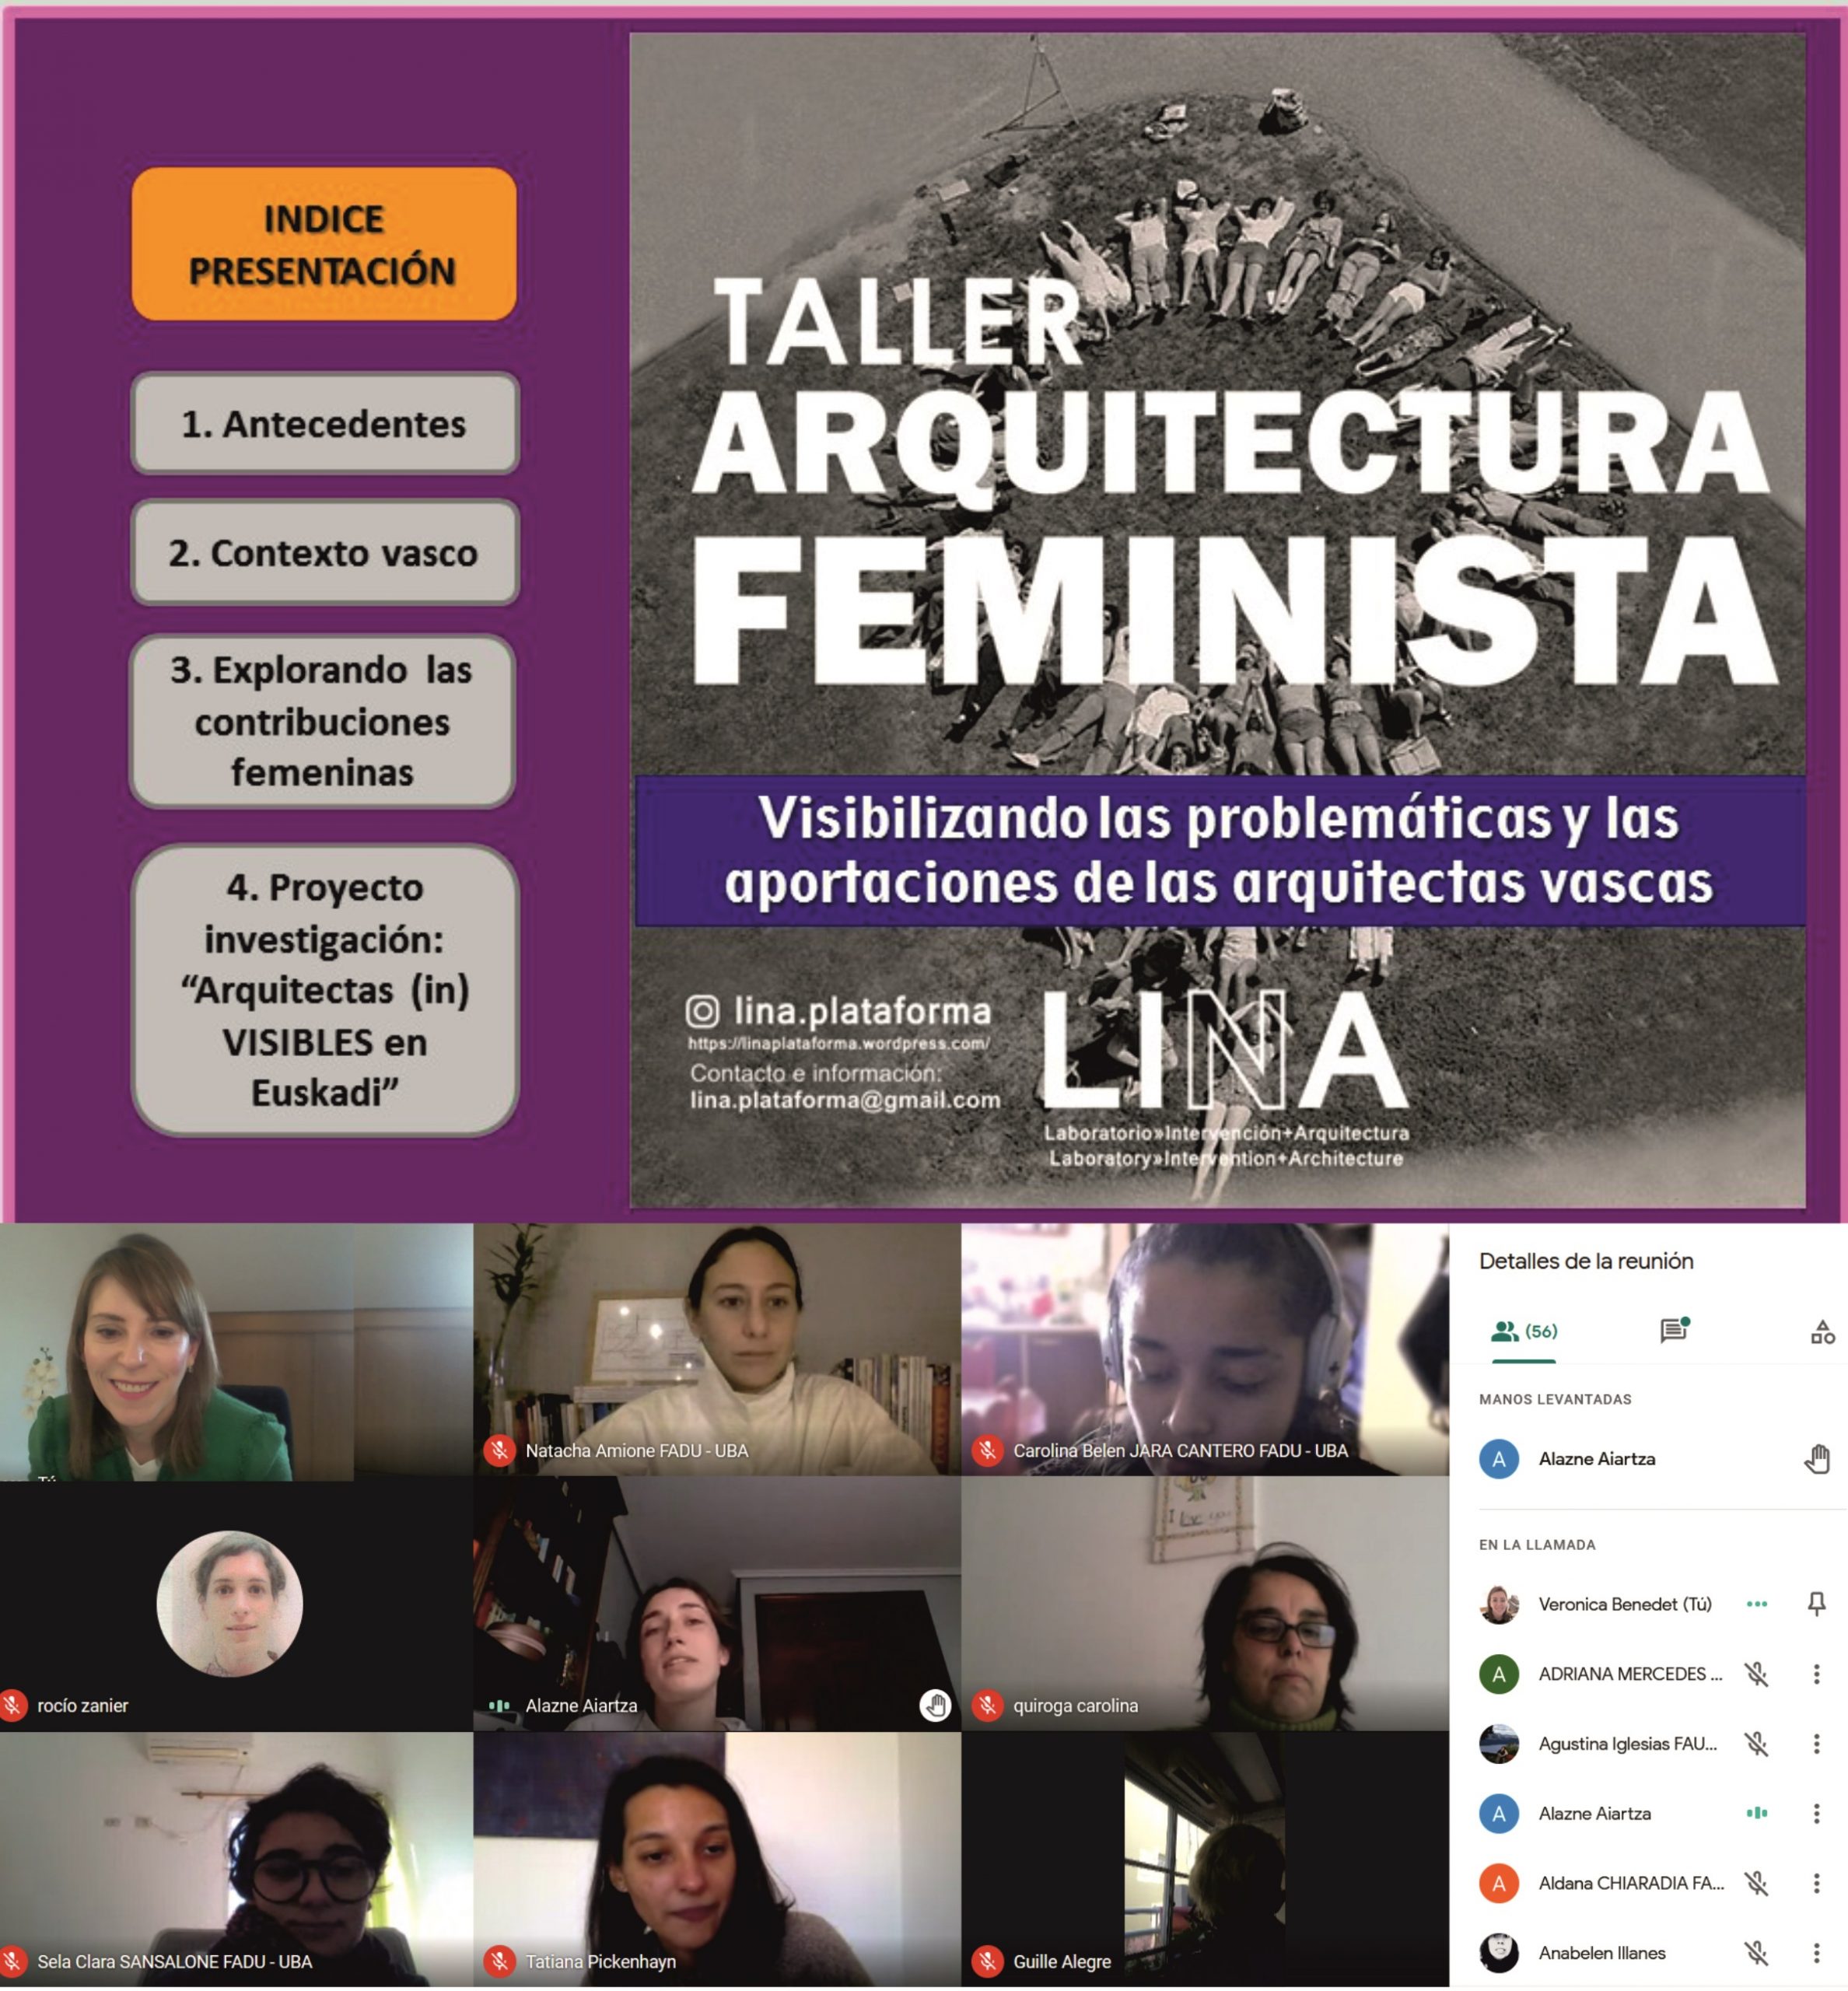 Conferencia Veronica Benedet en el Taller de Arquitectura Feminista